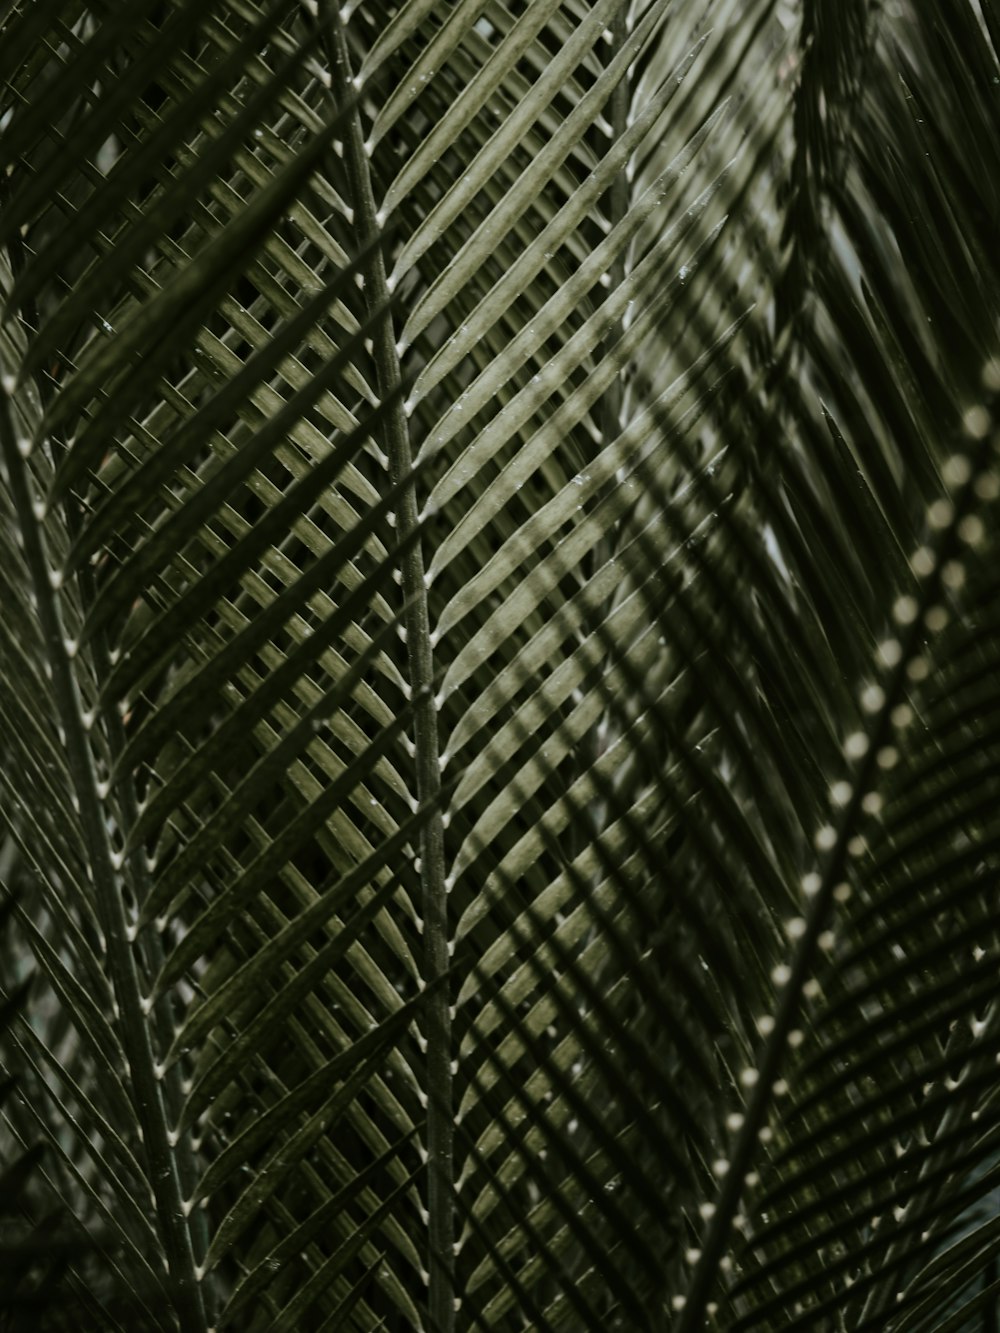 hojas de palma de coco verde